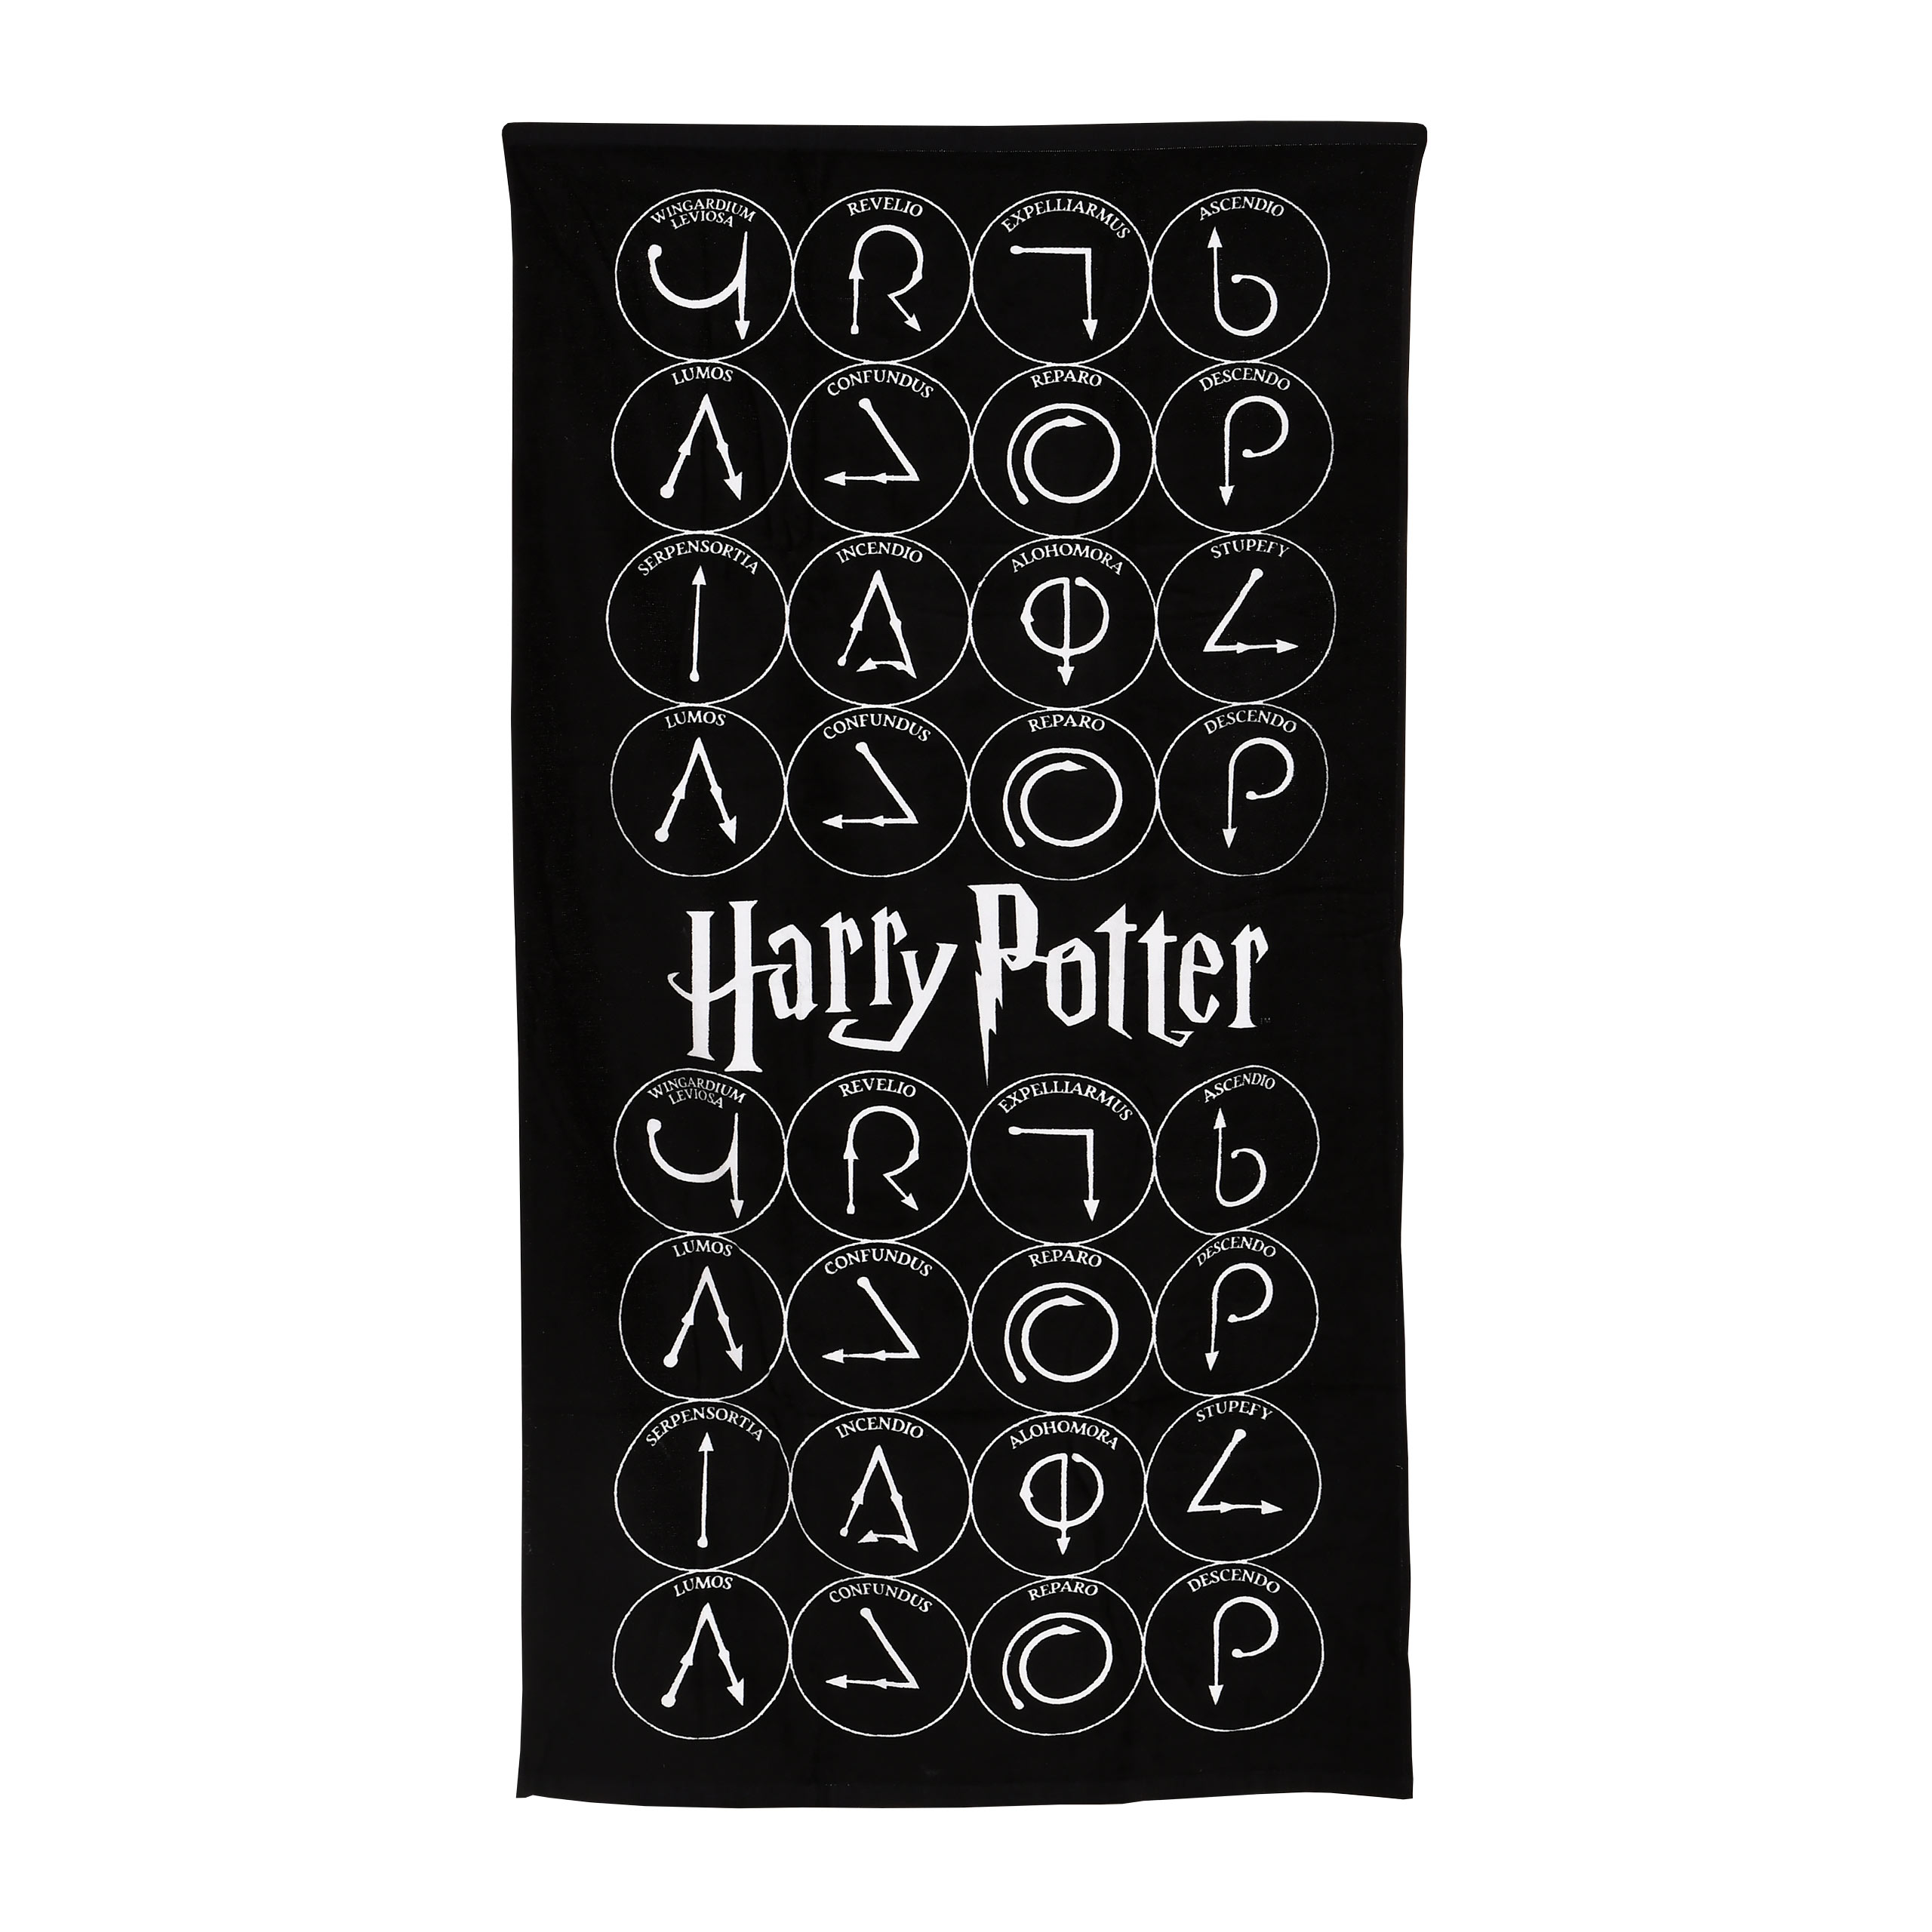 Harry Potter - Magic Spells Bath Towel